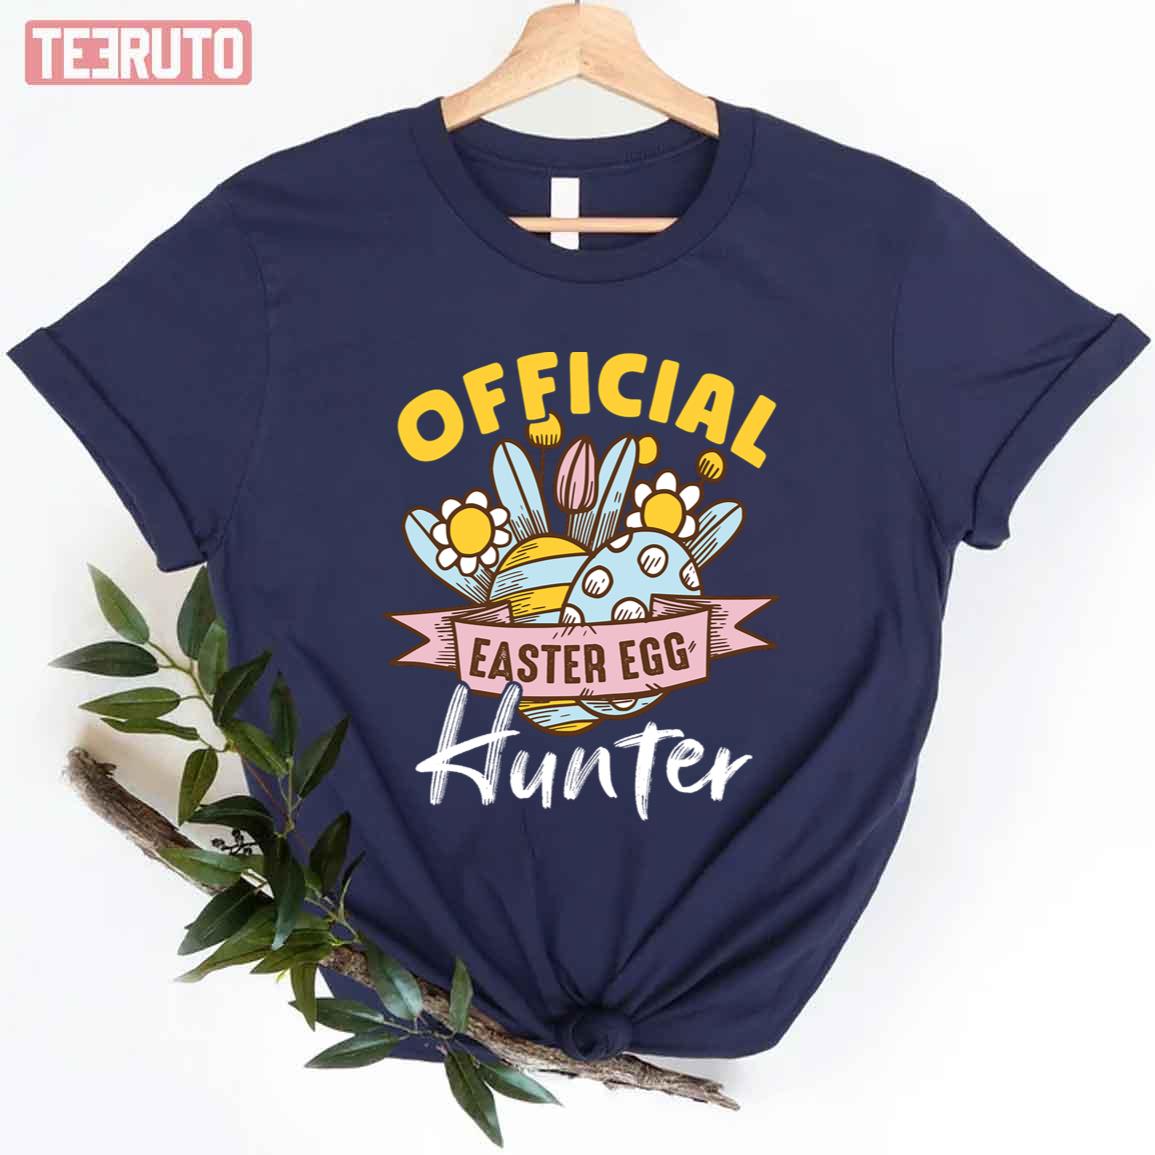 Official Easter Egg Hunter Retro Unisex T-shirt